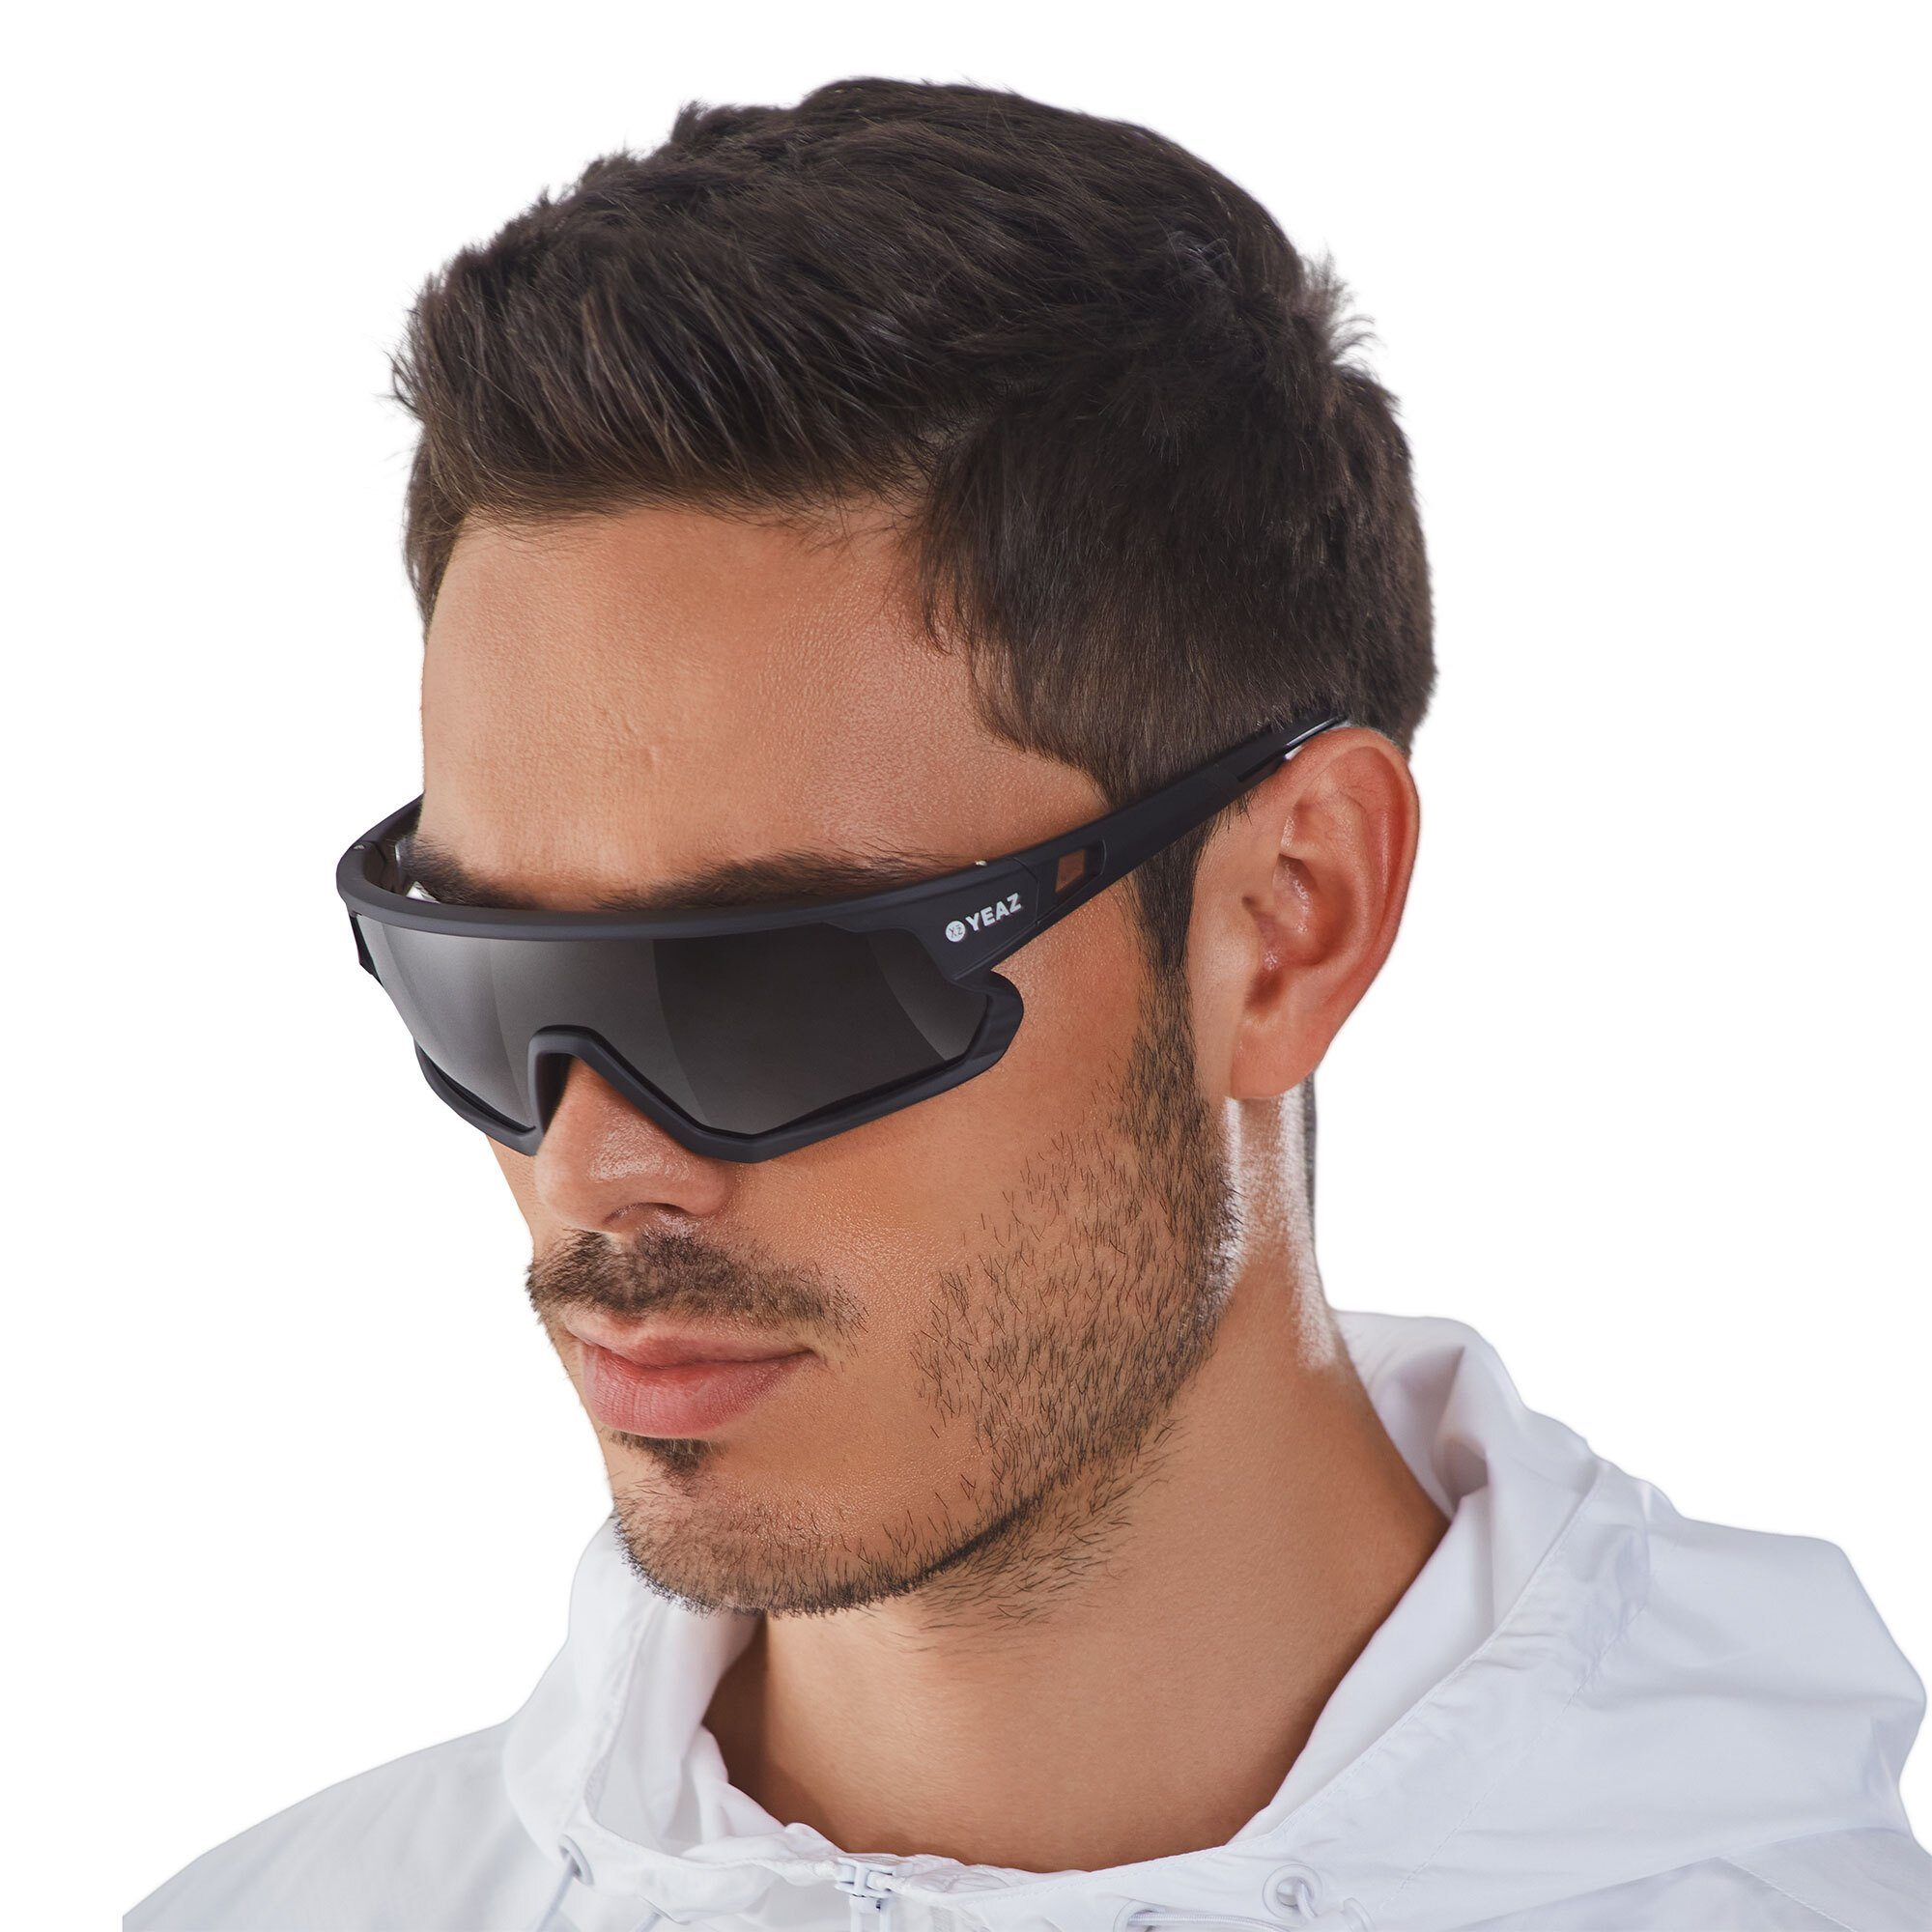 YEAZ Sportbrille SUNRISE sport-sonnenbrille black, Guter Schutz bei optimierter Sicht